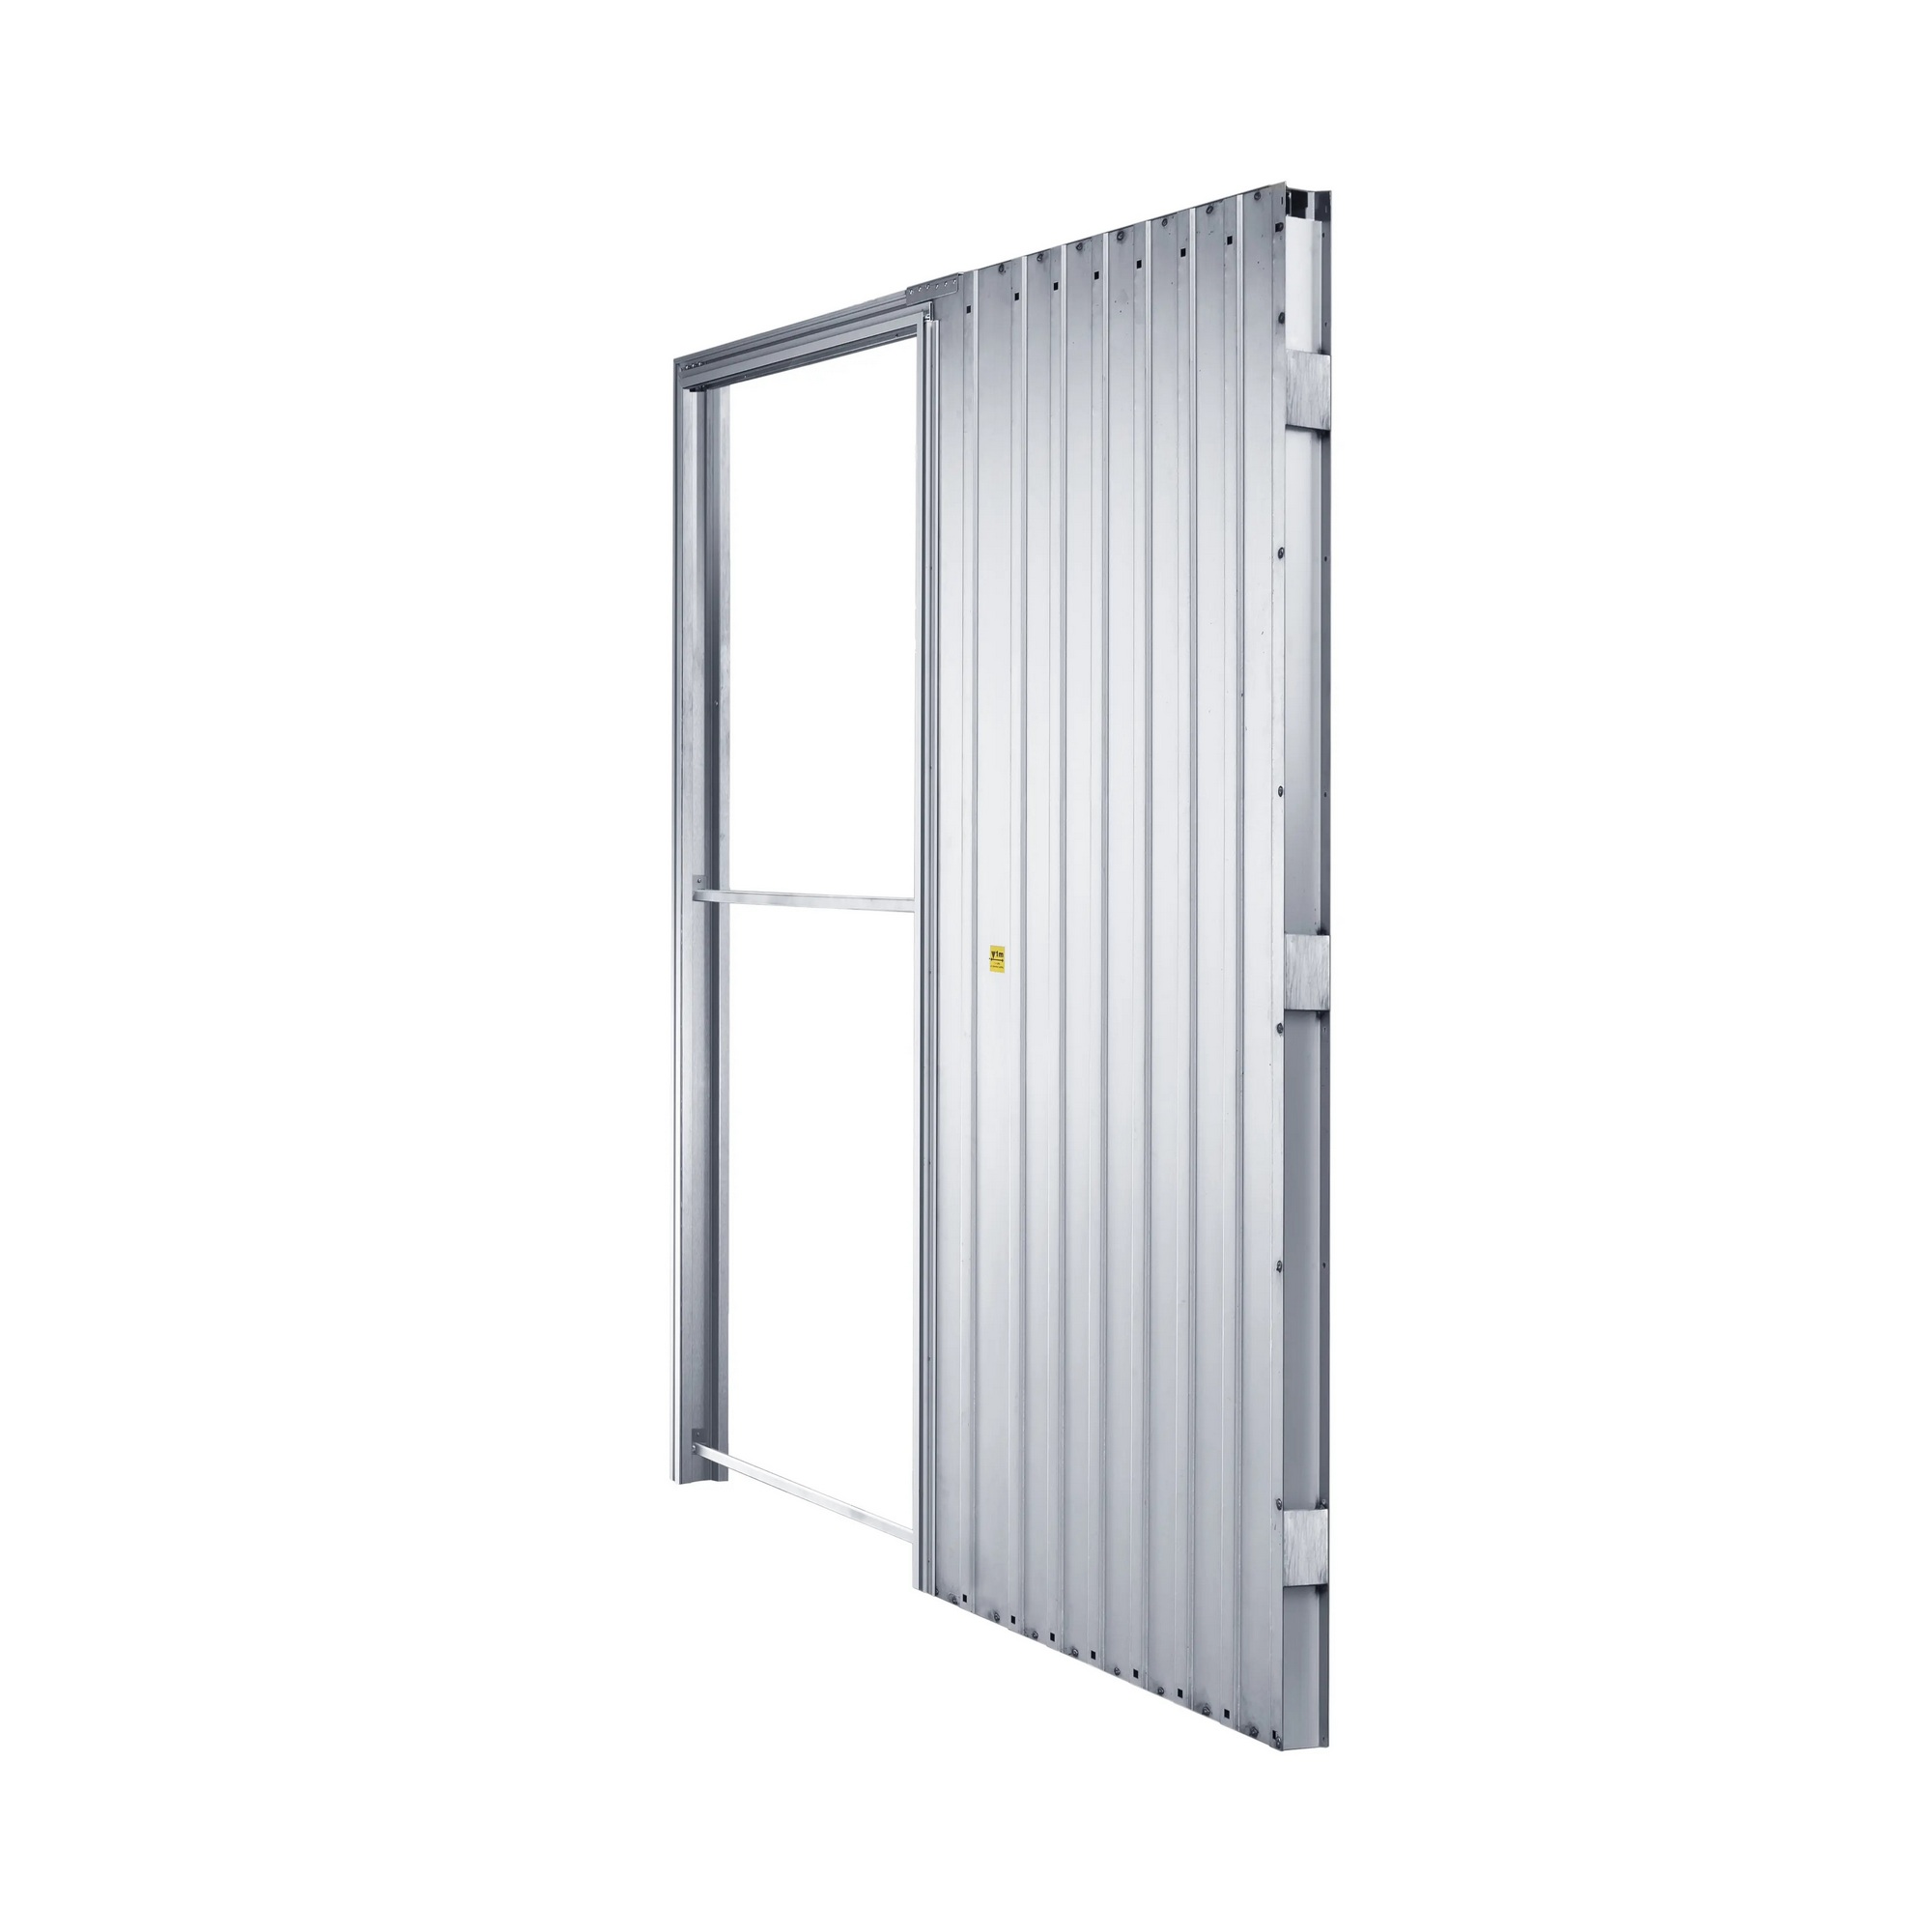 Pouzdro pro posuvné dveře JAP EMOTIVE standard 800 mm do SDK JAP